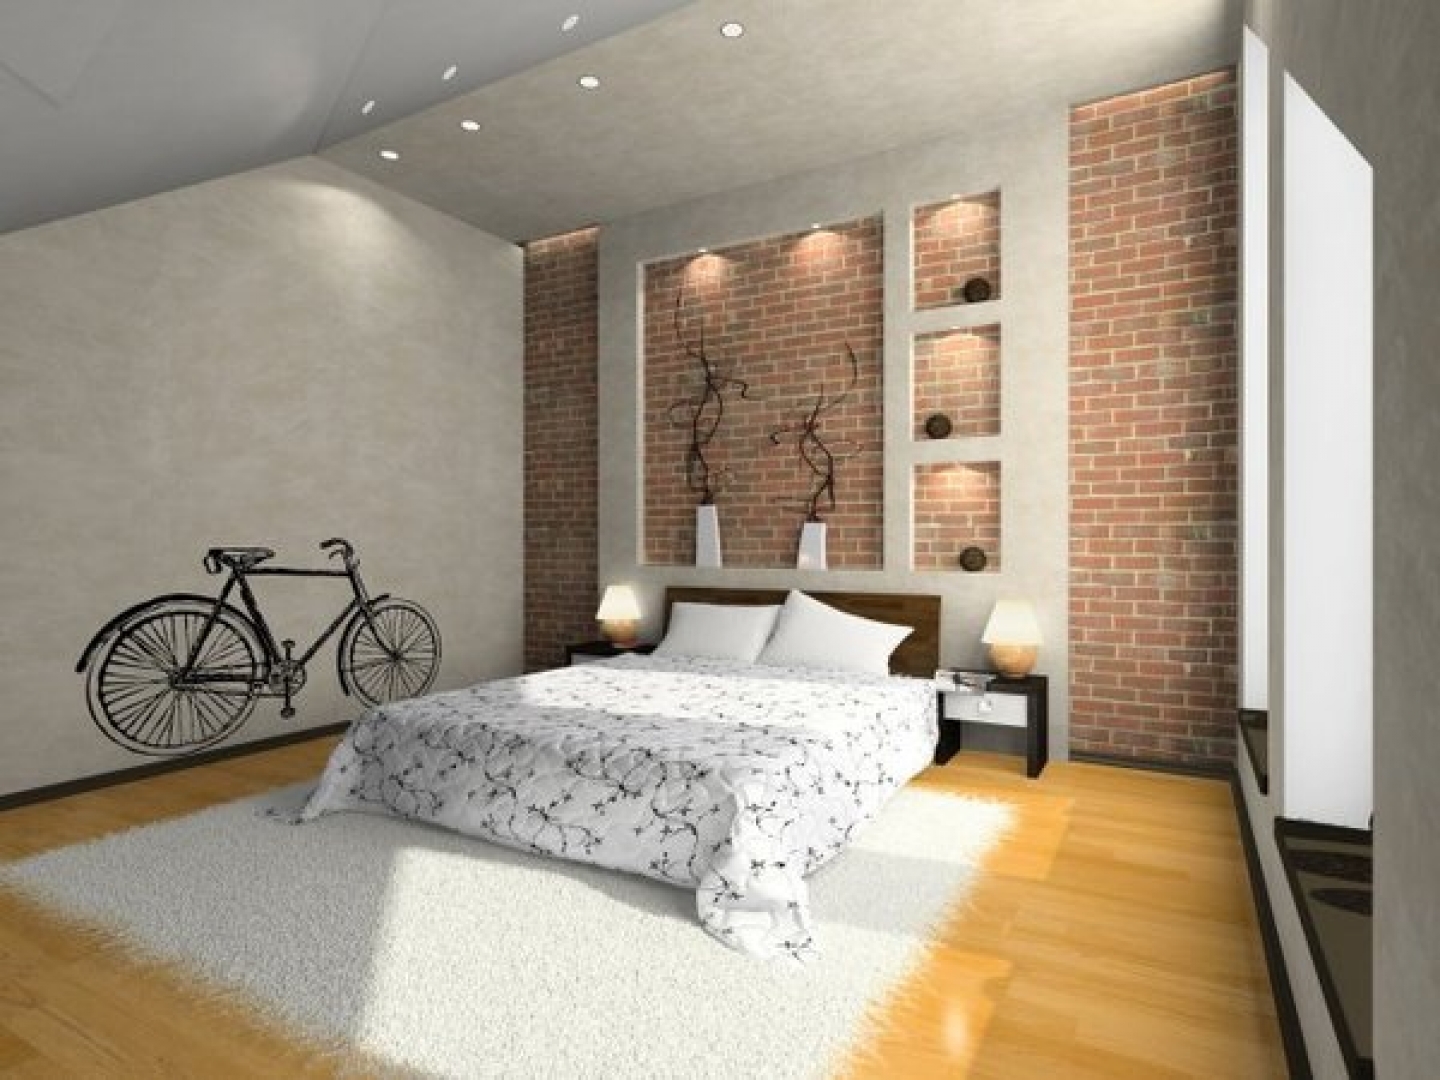 Bed Bedroom Ideas Wallpaper Designs Digital